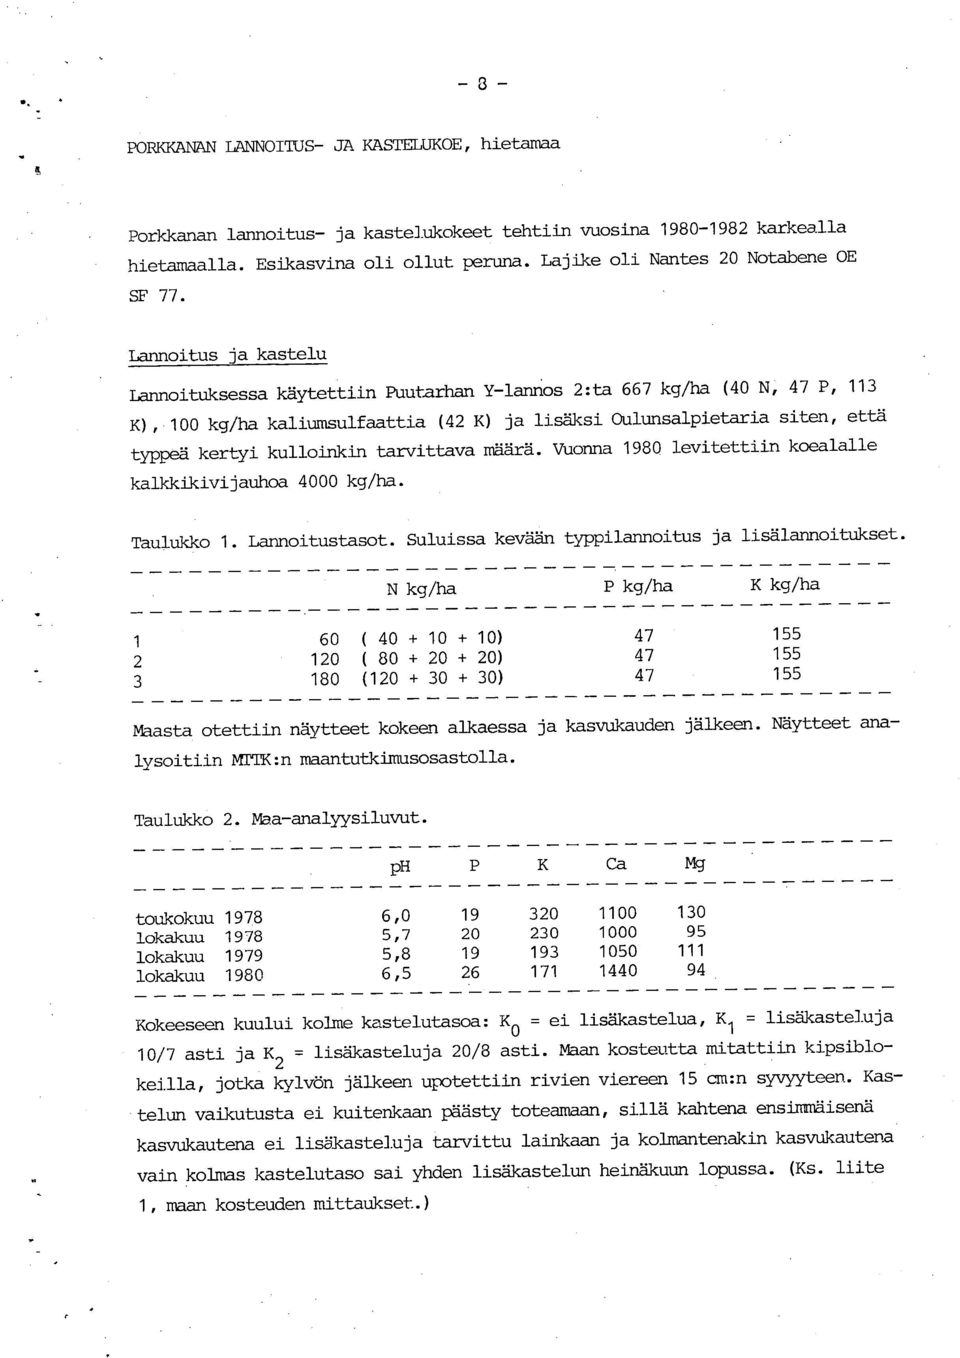 Lannoitus ja kastelu LannoitUksessa käytettiin Puutarhan Y-lannos 2: ta 667 kg/ha (40 N, 47 P, 113 K), 100 kg/ha kaliumsulfaattia (42 K) ja lisäksi Oulunsalpietw-ia siten, että typpeä kertyi